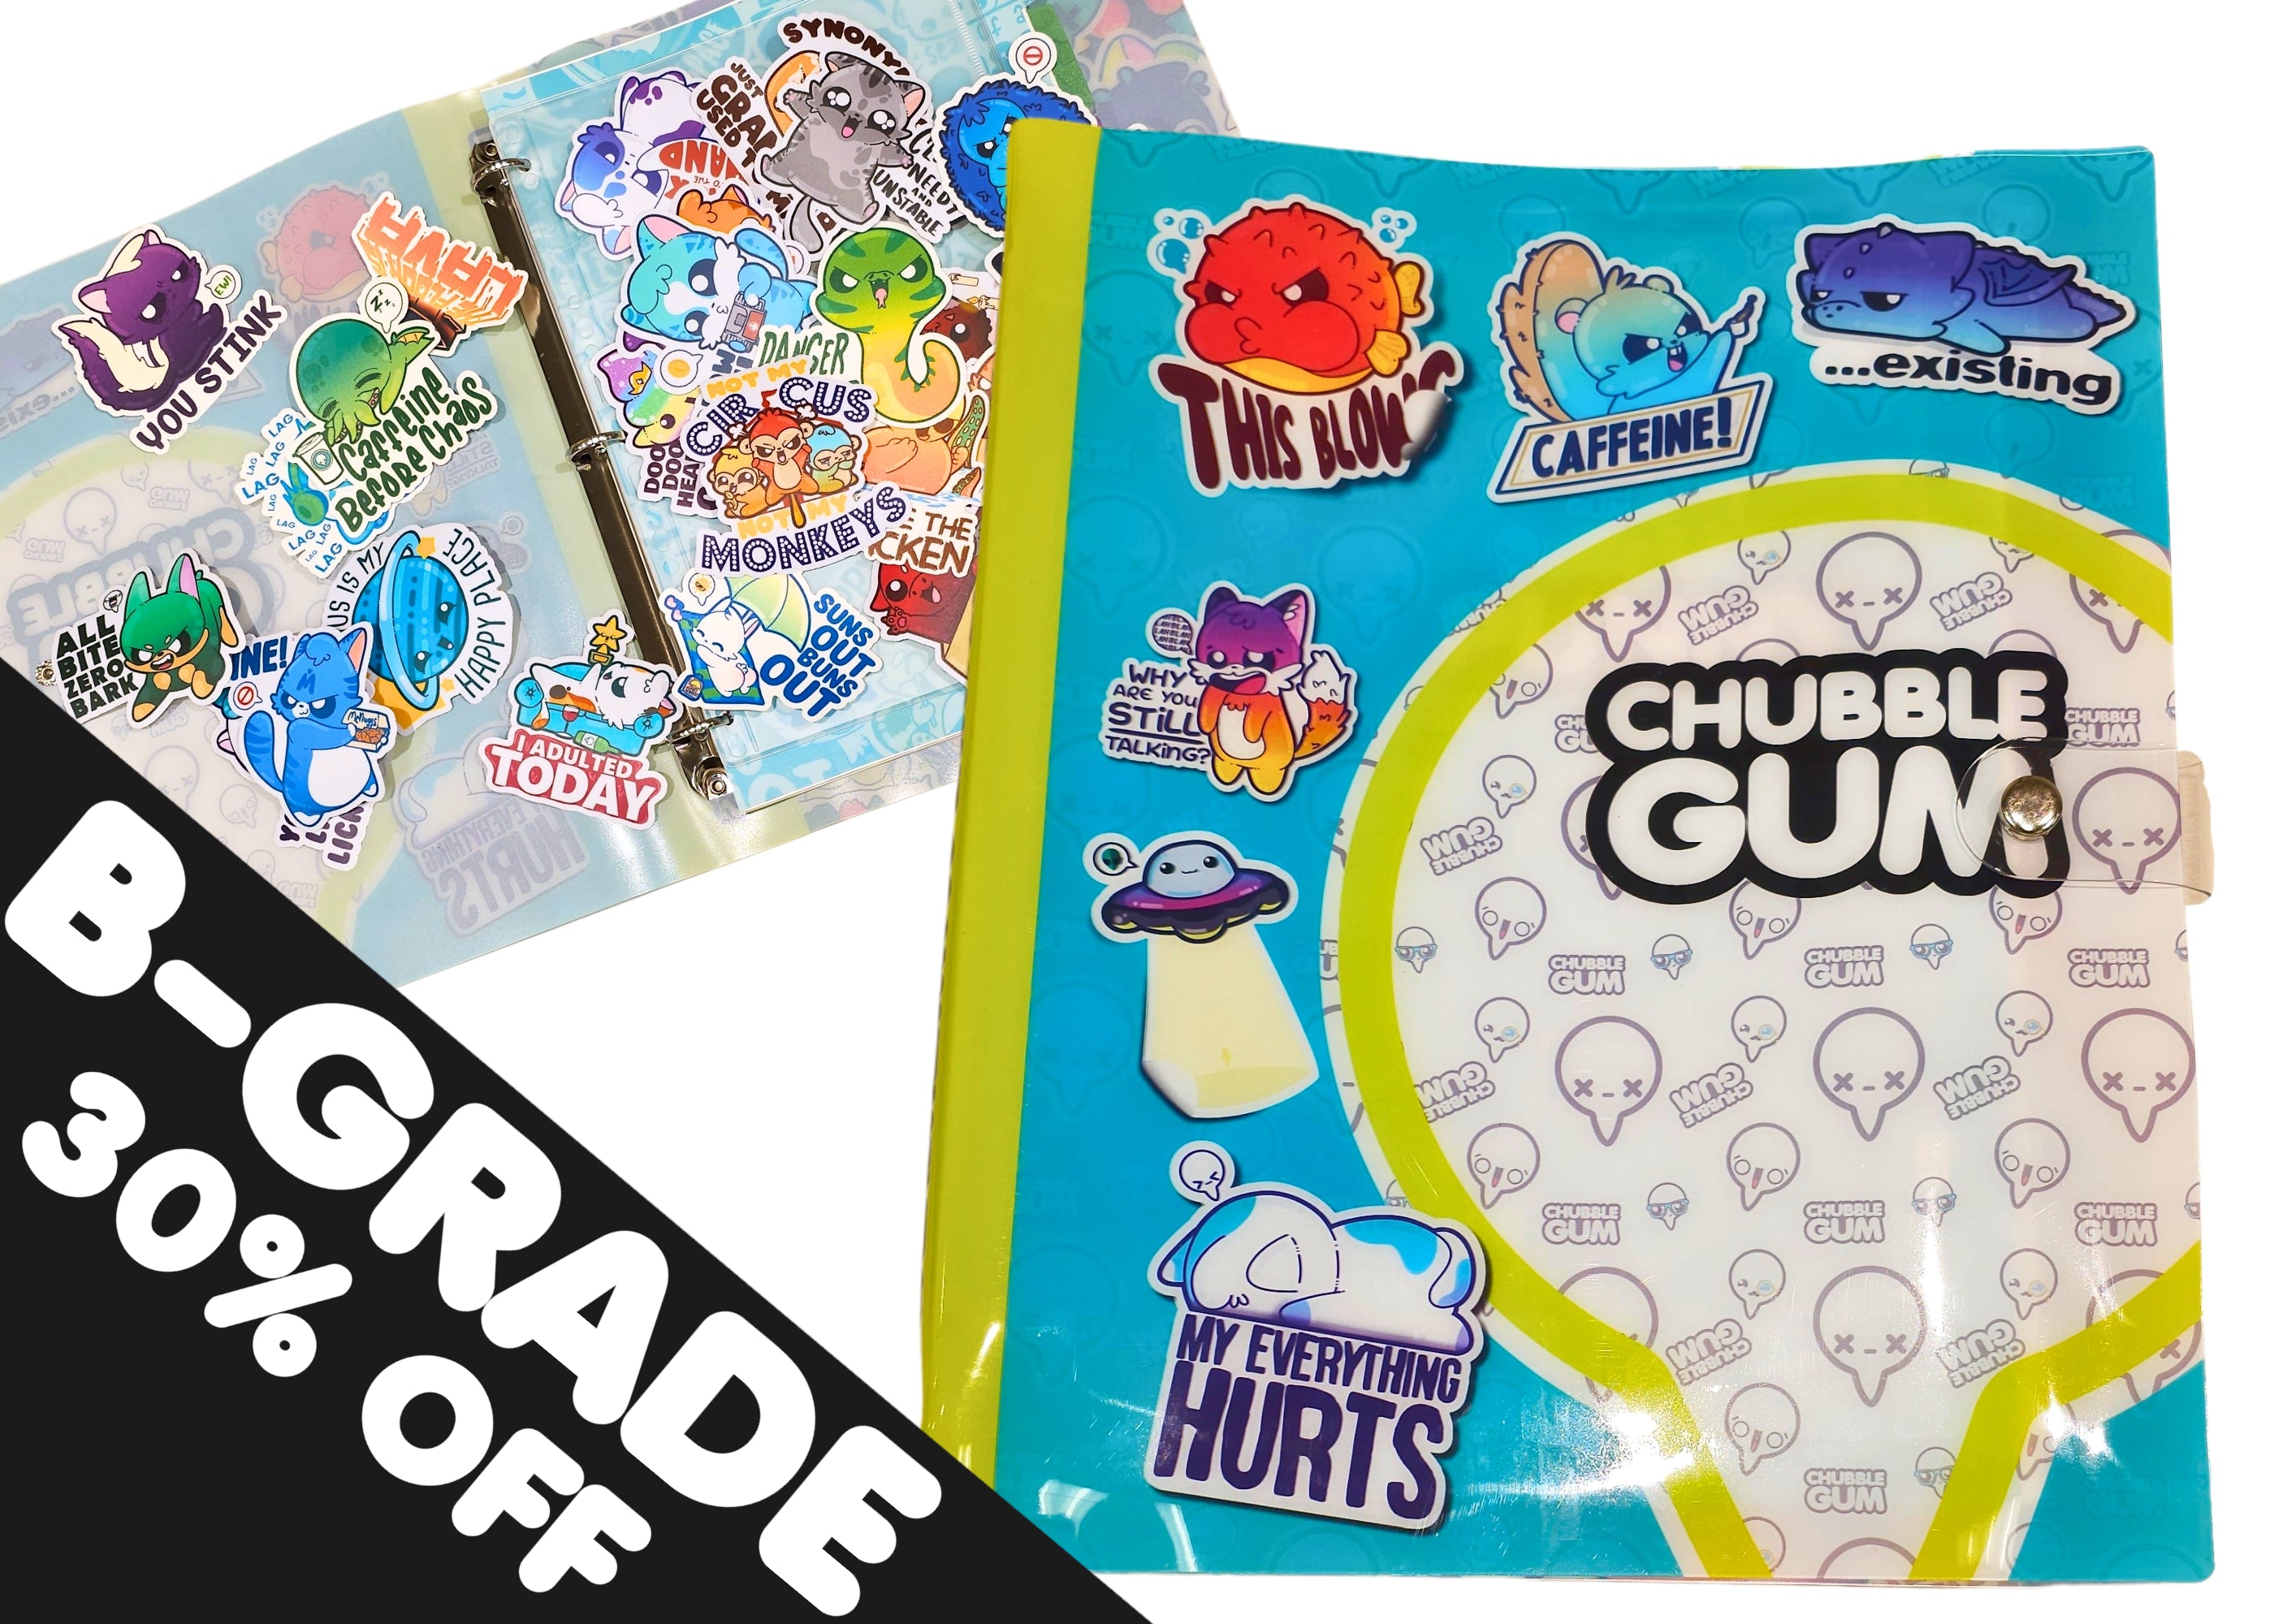 B-GRADE Chubble Gum Sticker Lookbook - ChubbleGumLLC